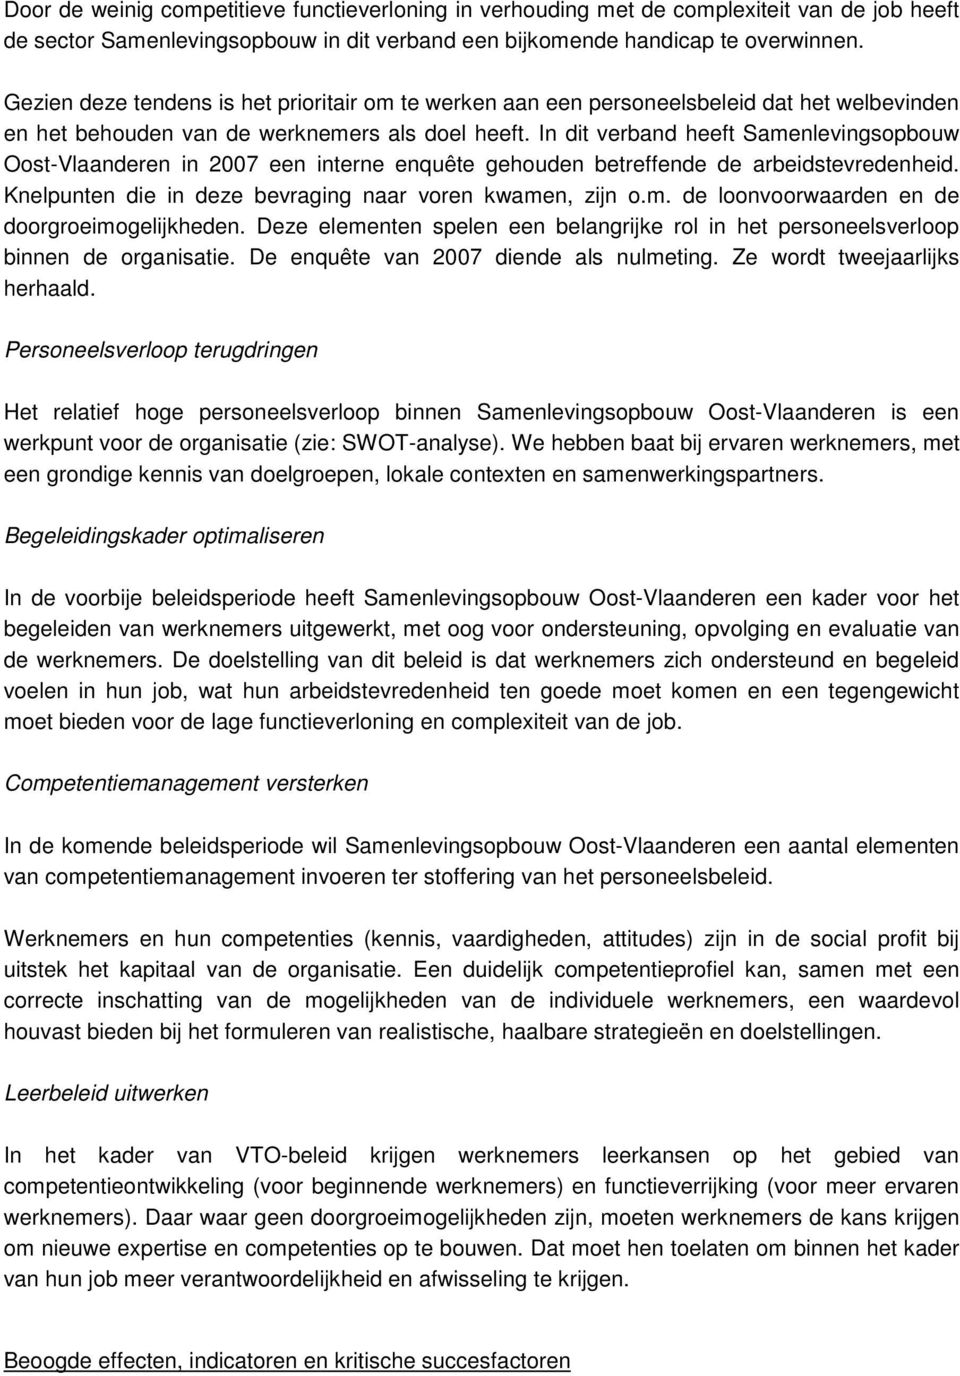 In dit verband heeft Samenlevingsopbouw Oost-Vlaanderen in 2007 een interne enquête gehouden betreffende de arbeidstevredenheid. Knelpunten die in deze bevraging naar voren kwamen, zijn o.m. de loonvoorwaarden en de doorgroeimogelijkheden.